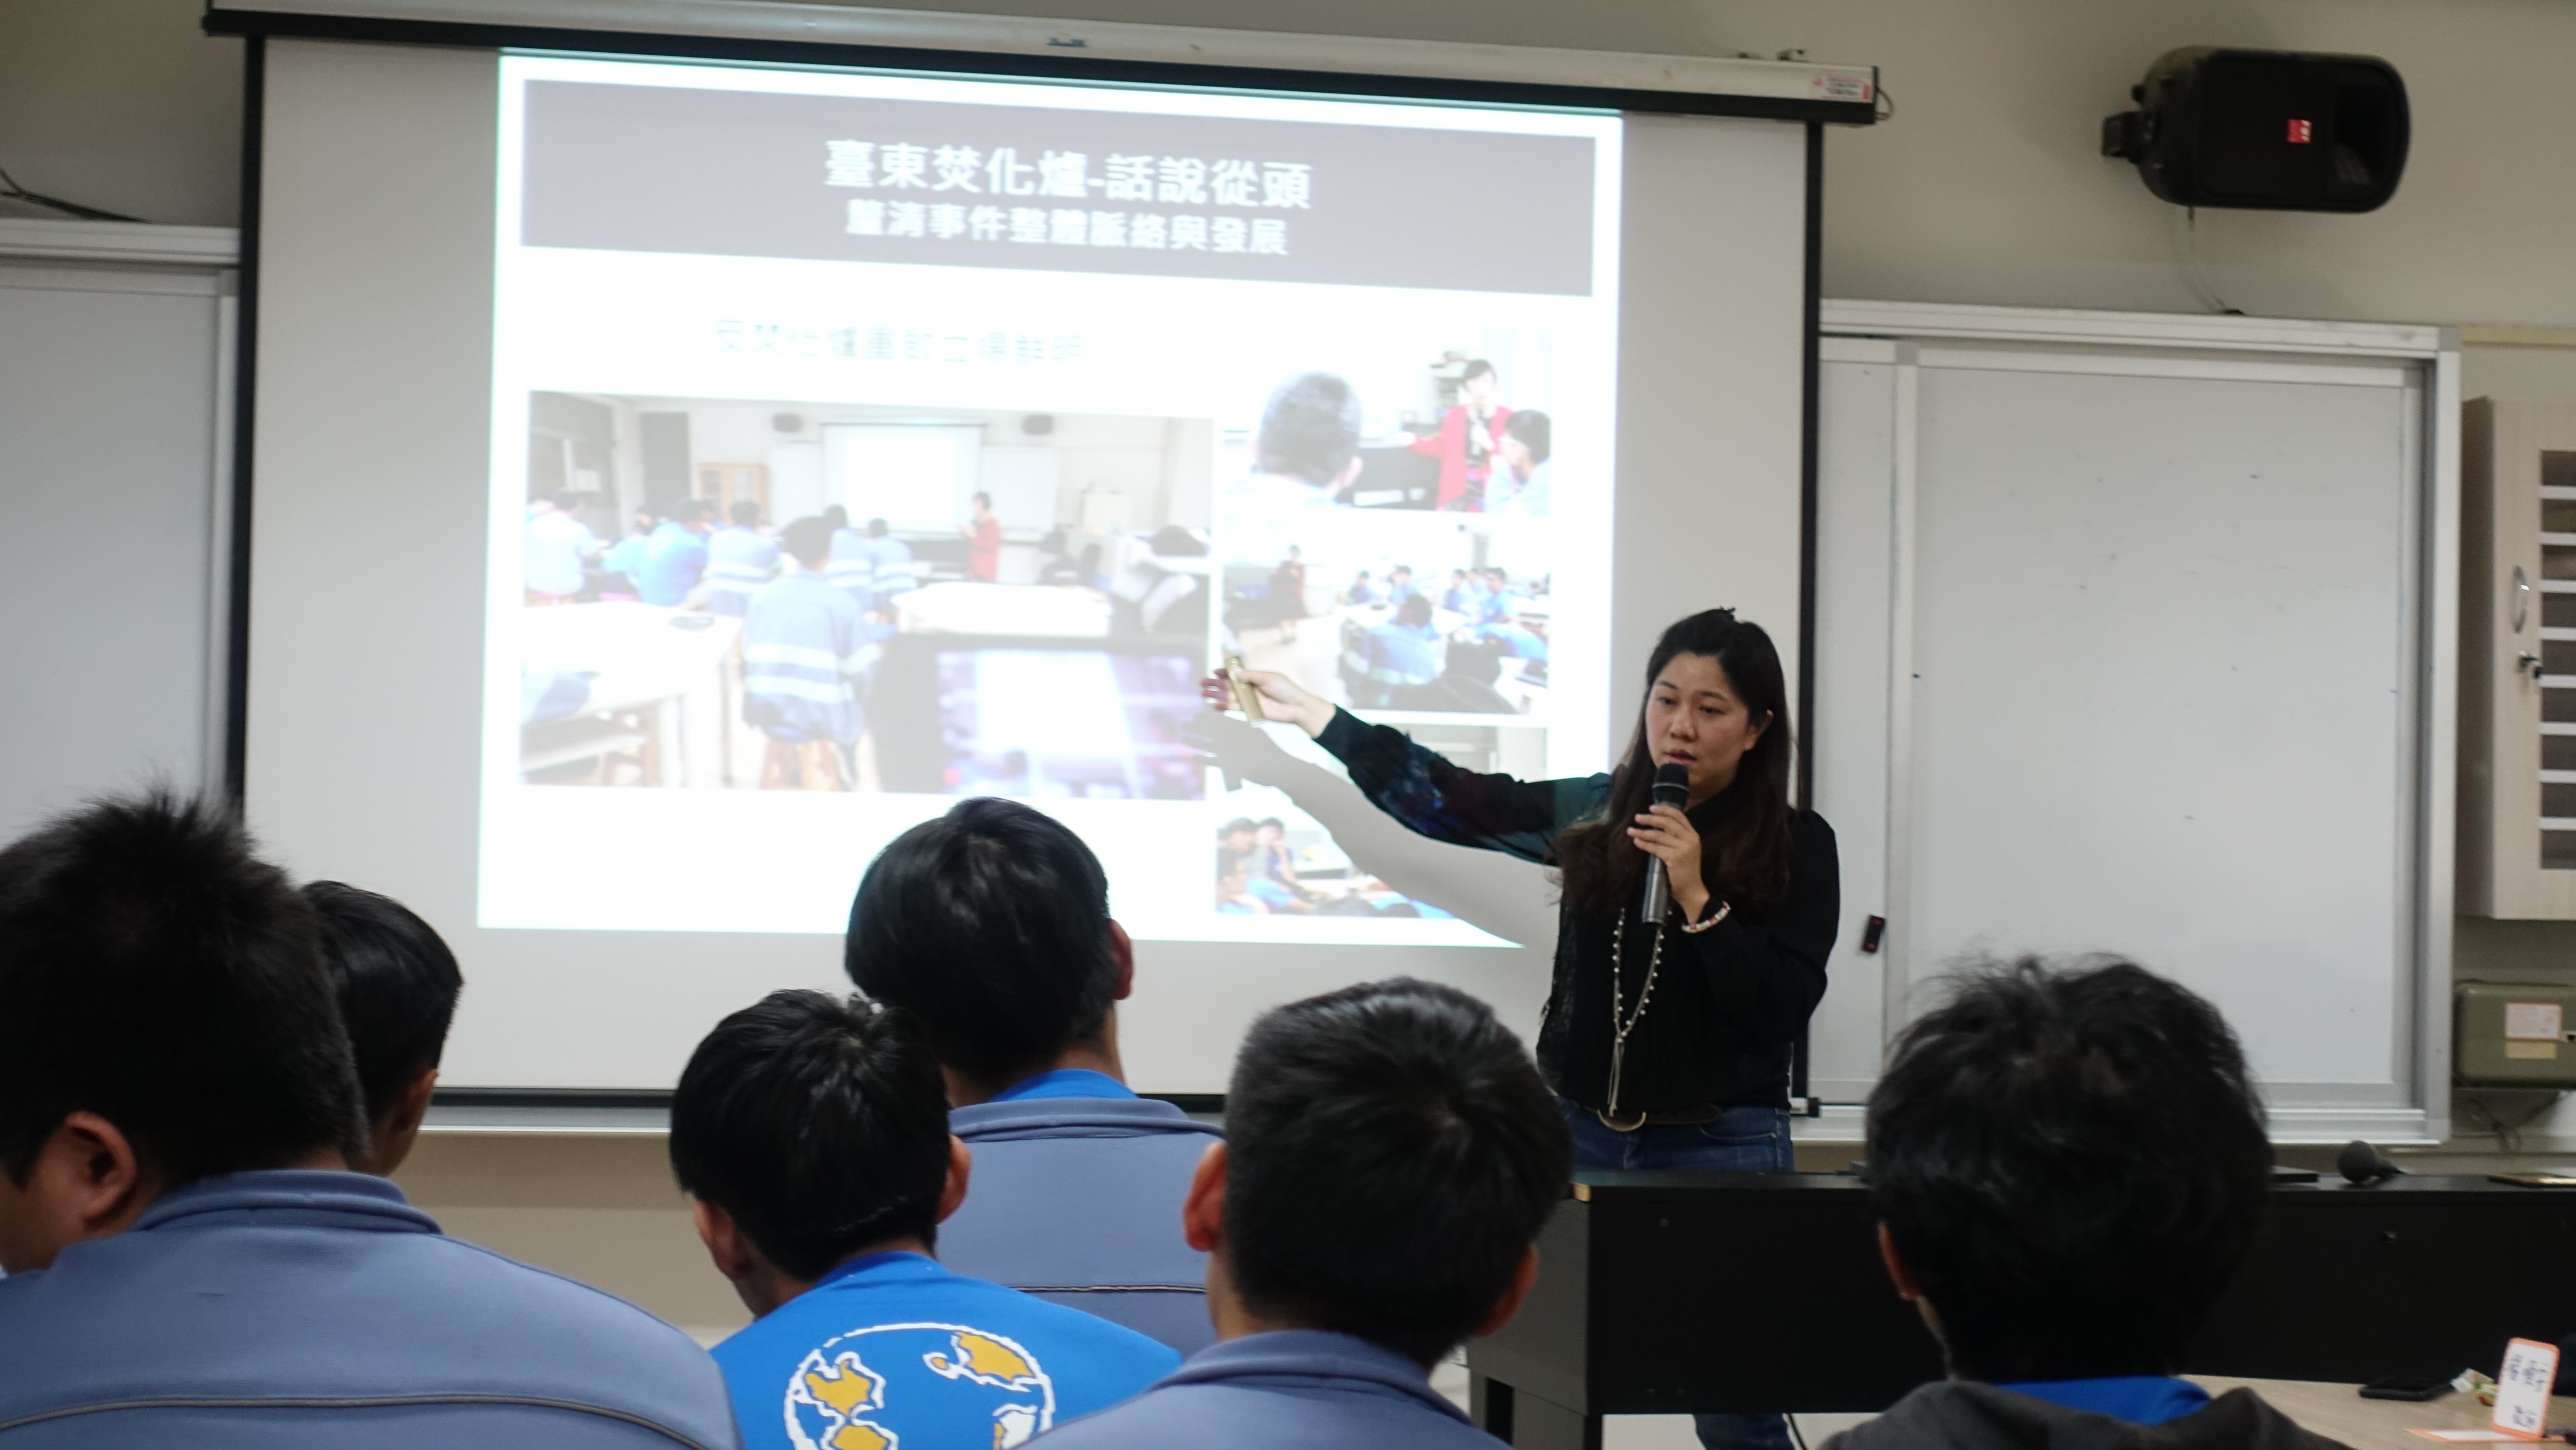 謝翠玲老師課堂教學關於臺東焚化爐議題